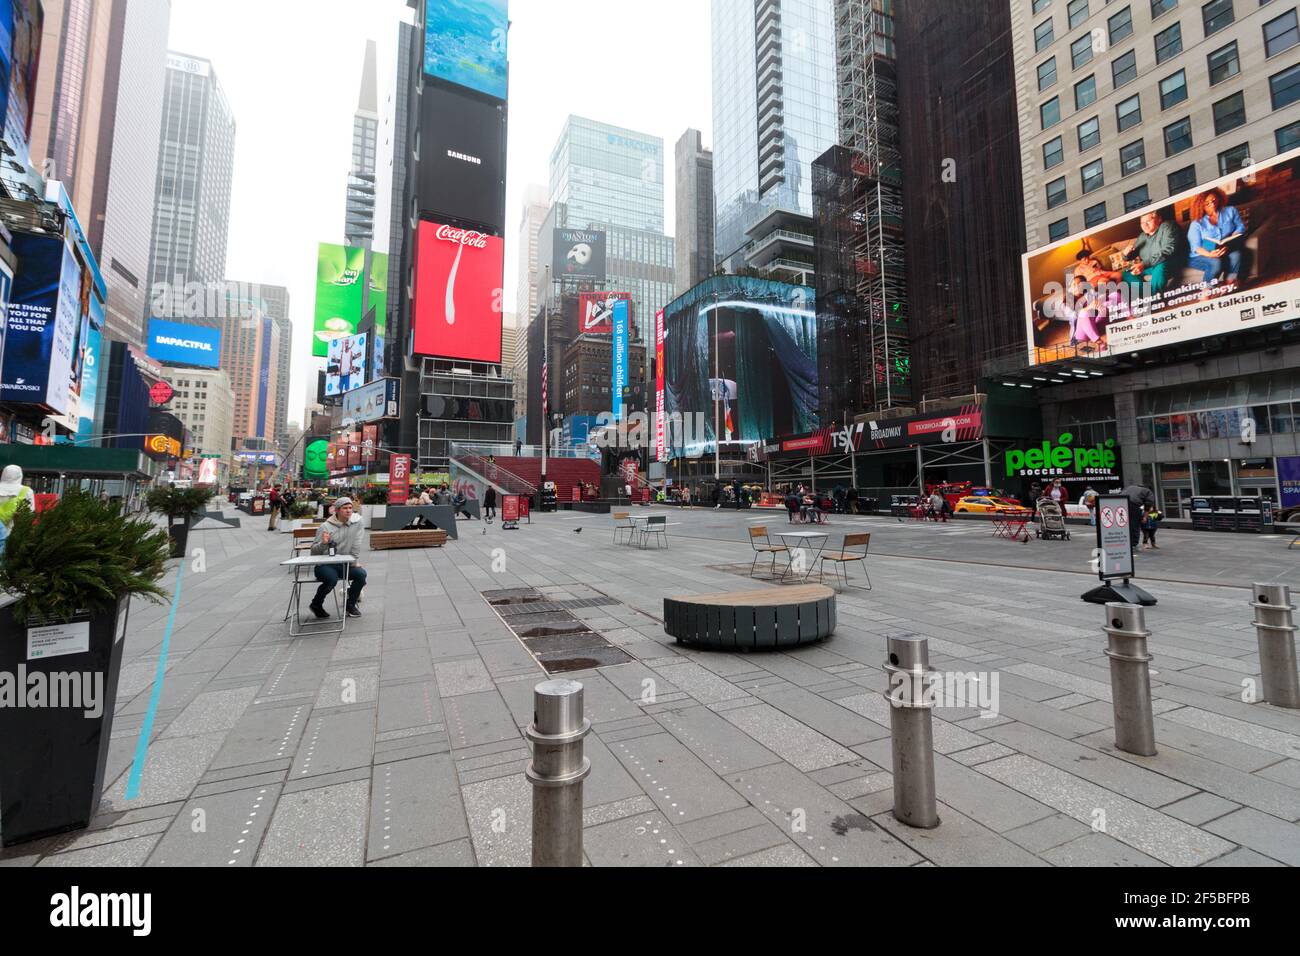 Un Times Square presque vide, New York par une journée de brouillard, les touristes et les travailleurs sont pour la plupart absents pendant la pandémie du coronavirus ou du covid-19 Banque D'Images